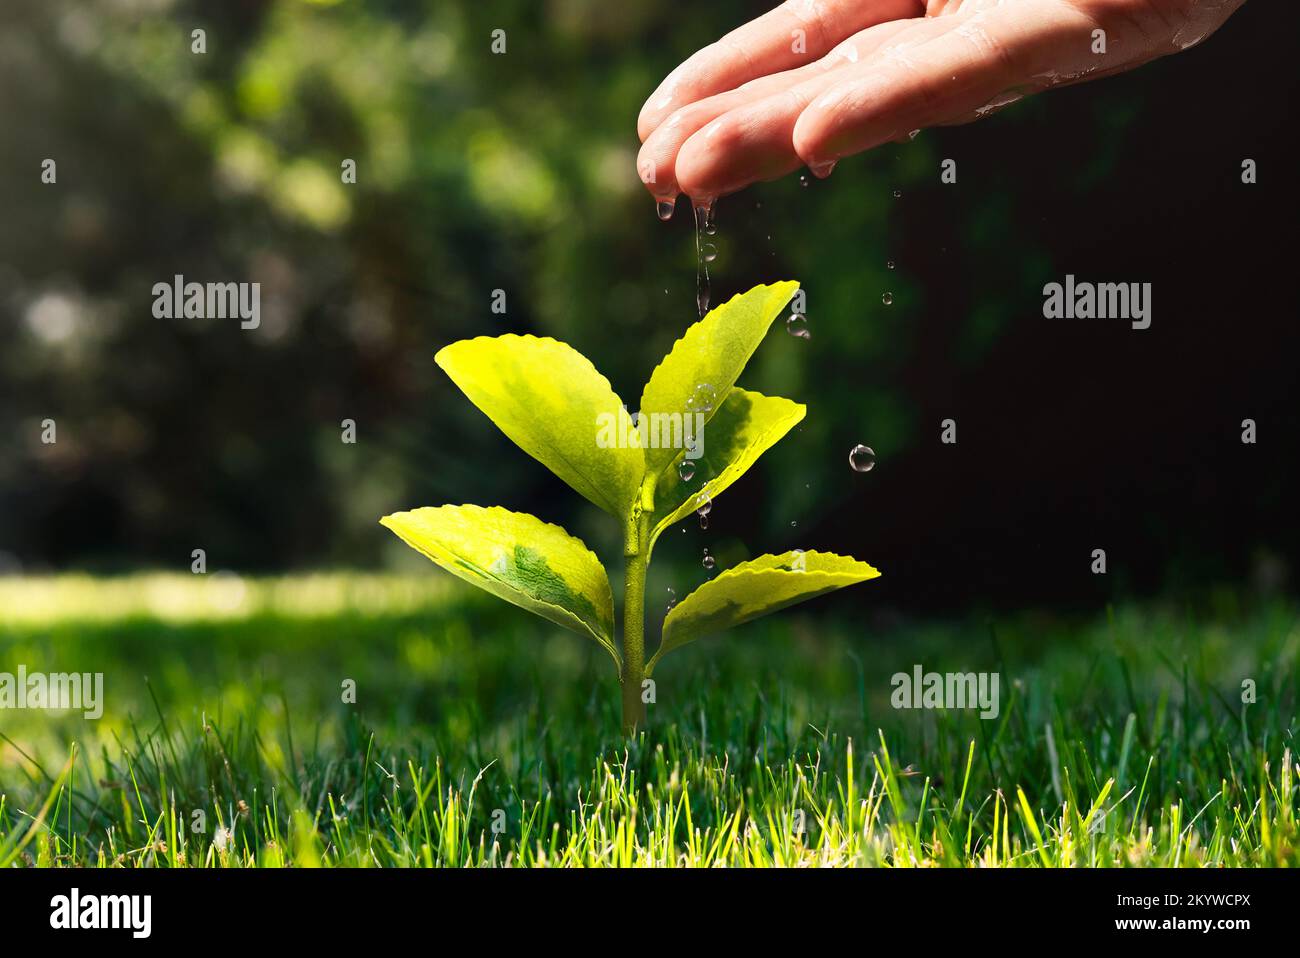 Protección ambiental, concepto ecológico con planta de cultivo de riego manual Foto de stock